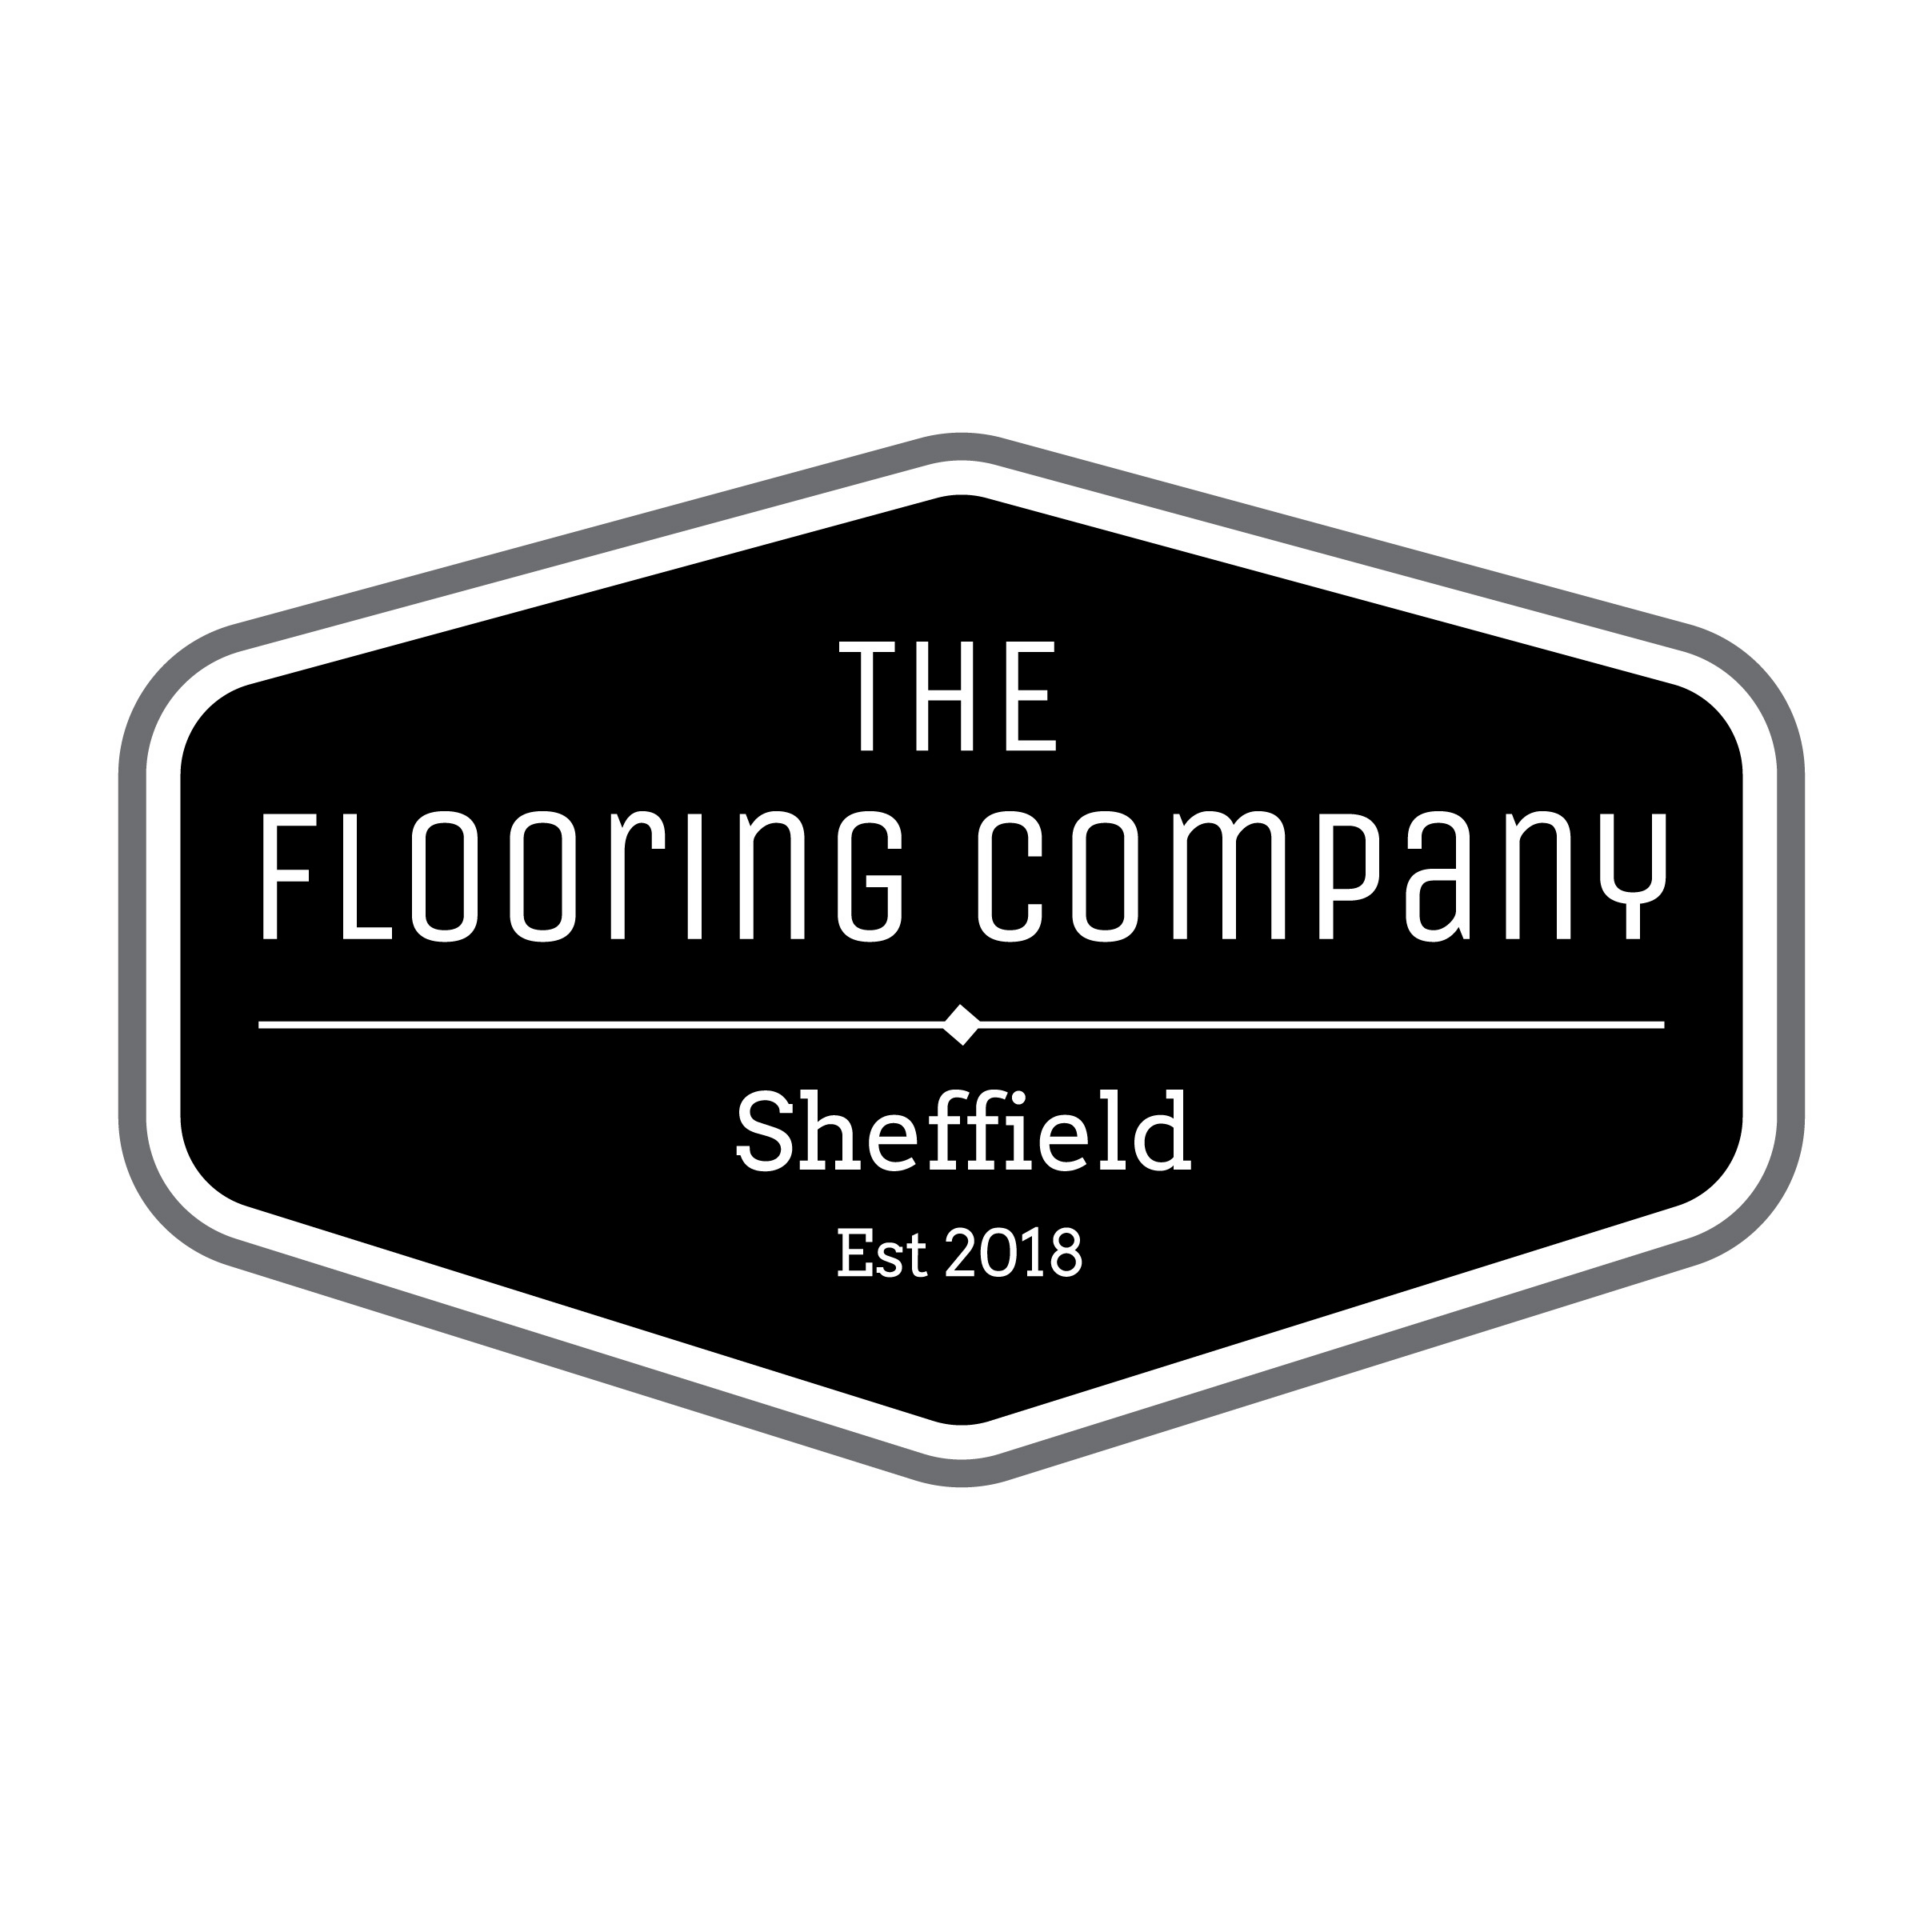 The Flooring Company Sheffield